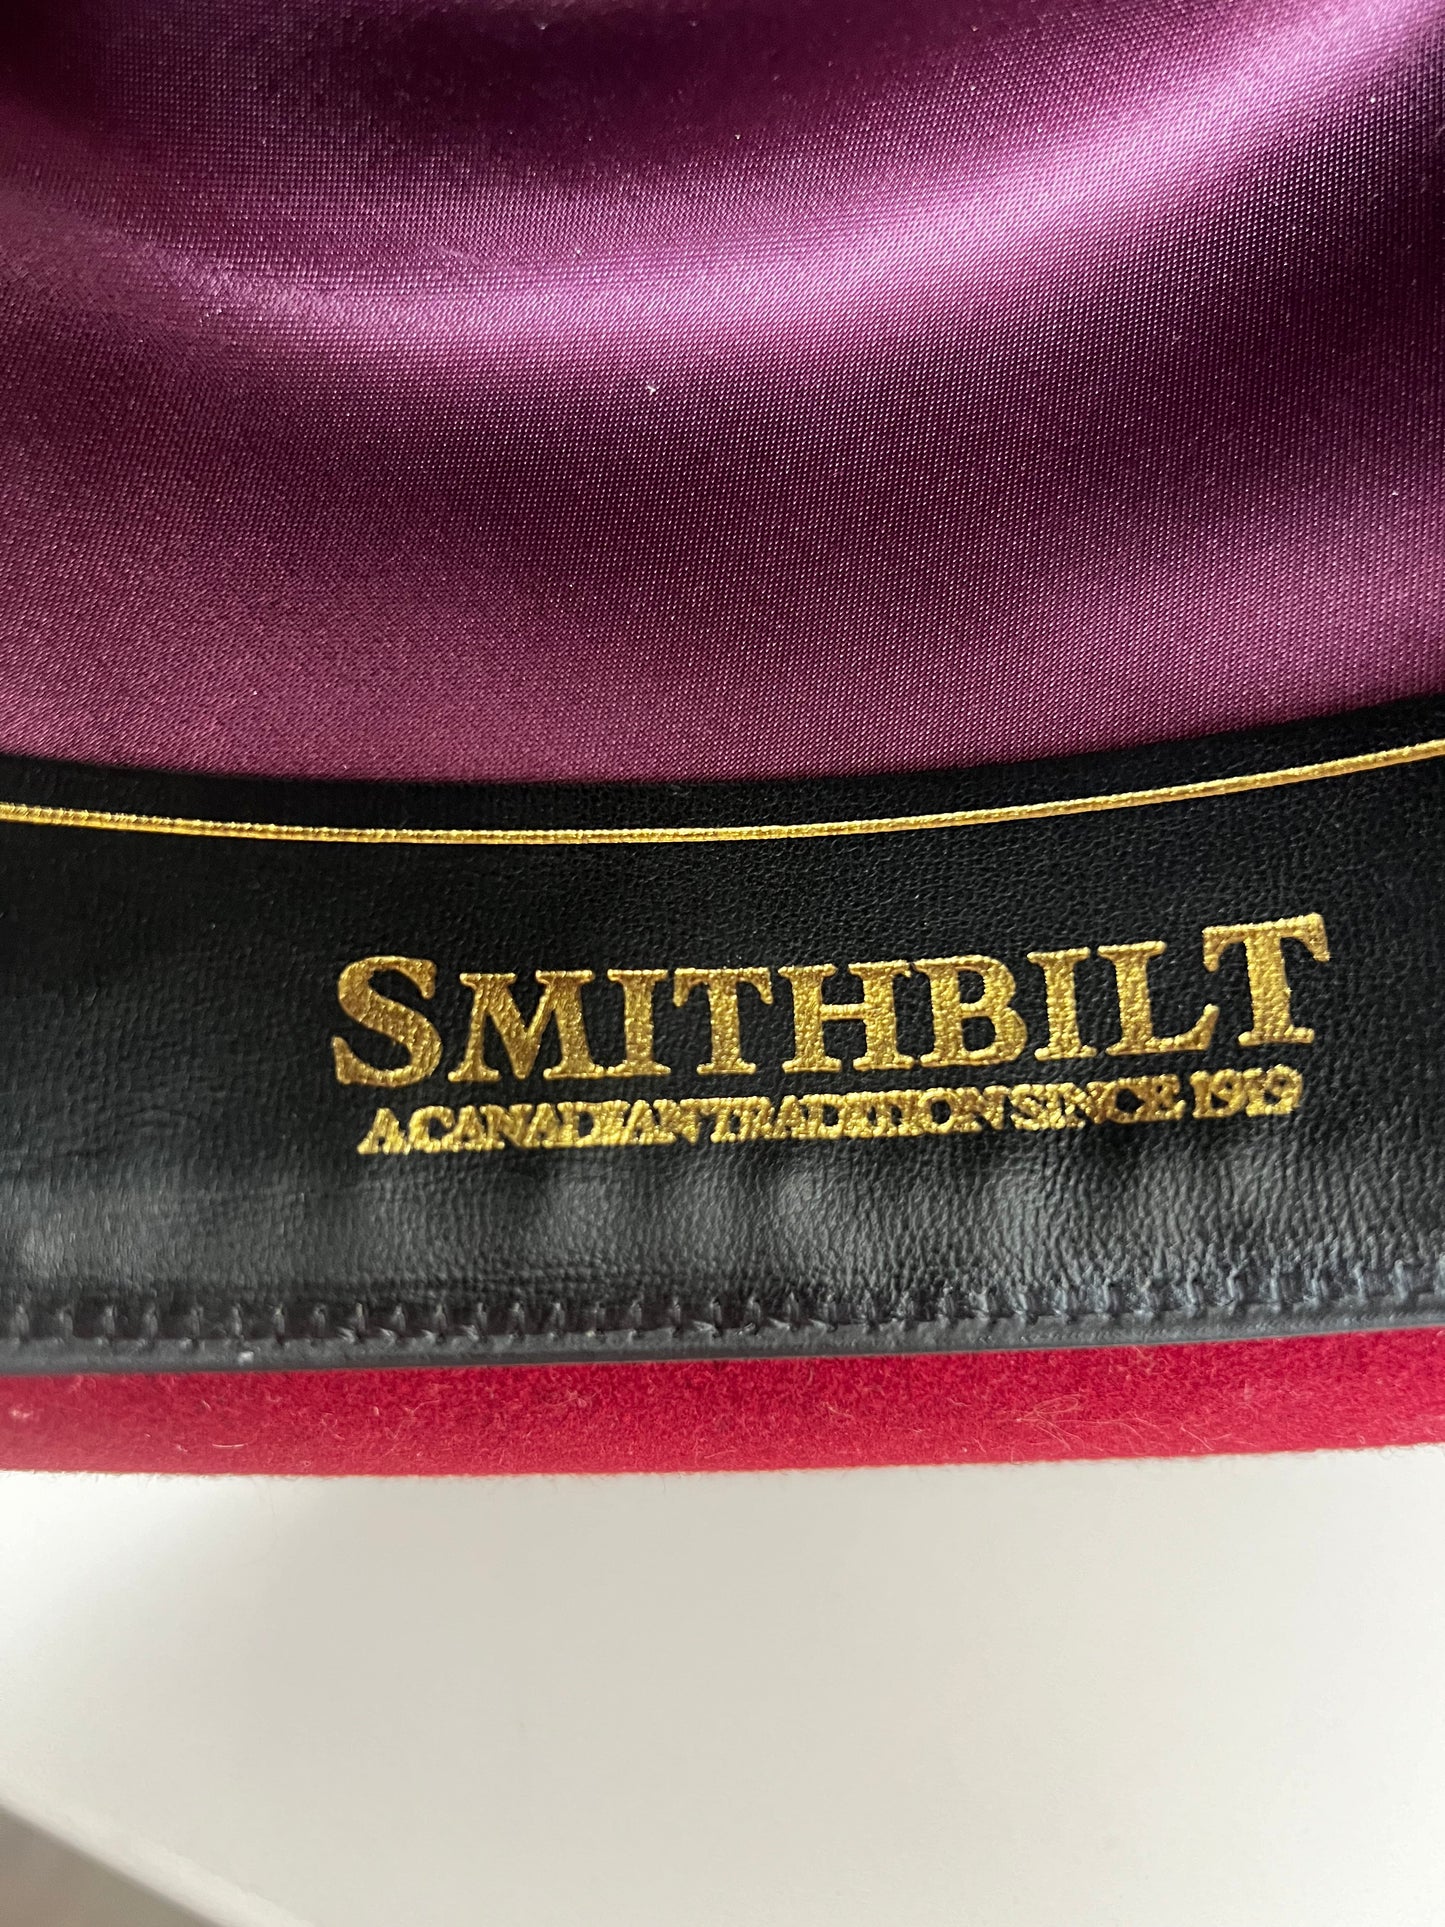 Smithbilt Red Wool Felt Unisex Cowboy Hat Size 7.5